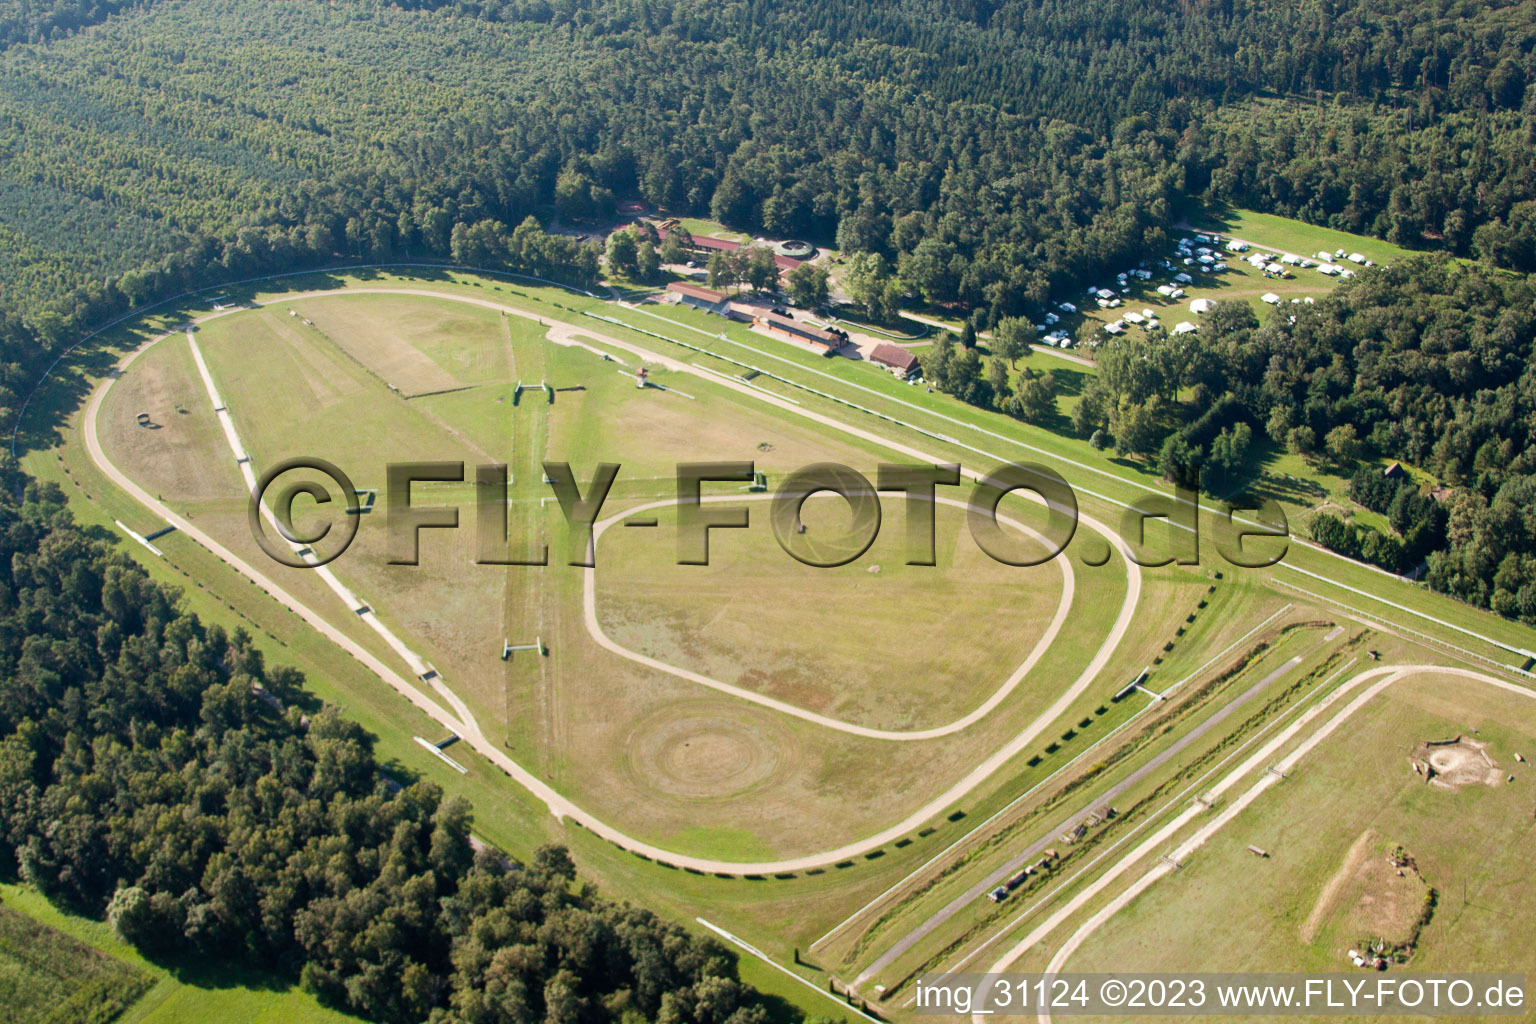 Luftbild von Altenstadt; Hippodrome im Bundesland Bas-Rhin, Frankreich